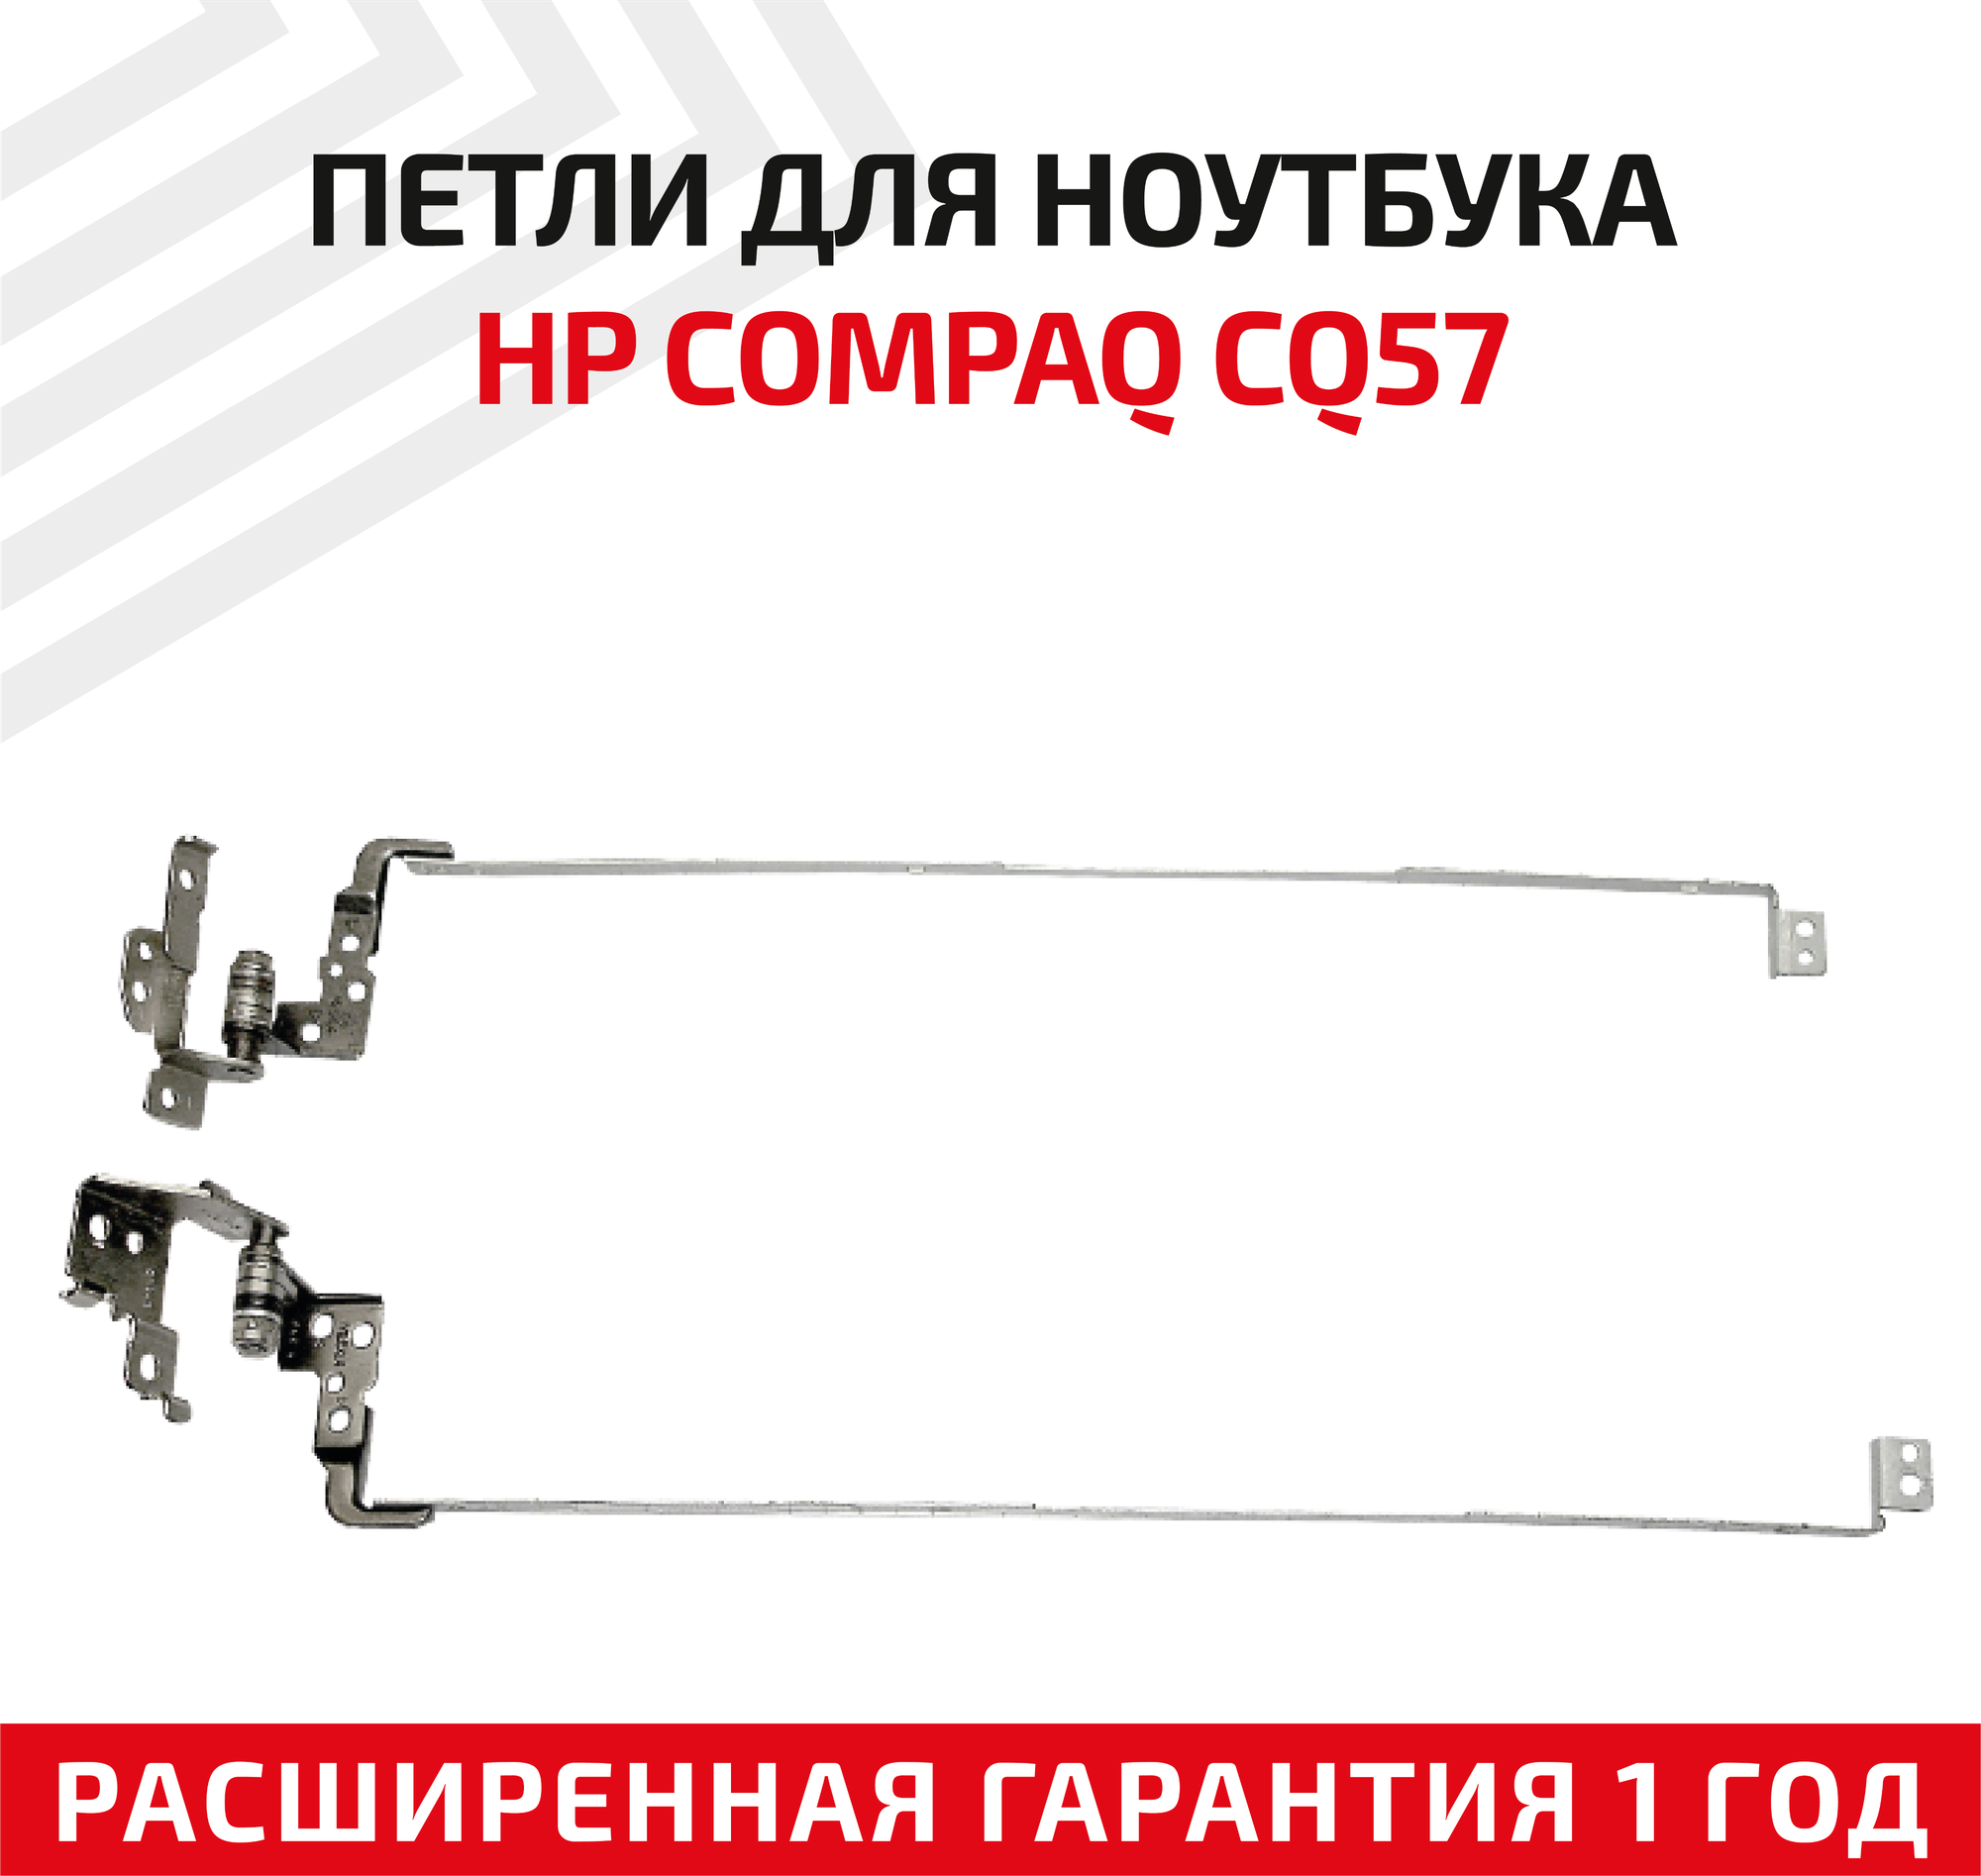 Петли (завесы) 1A01M8U00-GGS-G для крышки матрицы ноутбука HP 630 631 635 Compaq CQ57 CQ57-100 CQ57-1000 CQ57-200 комплект 2 шт.